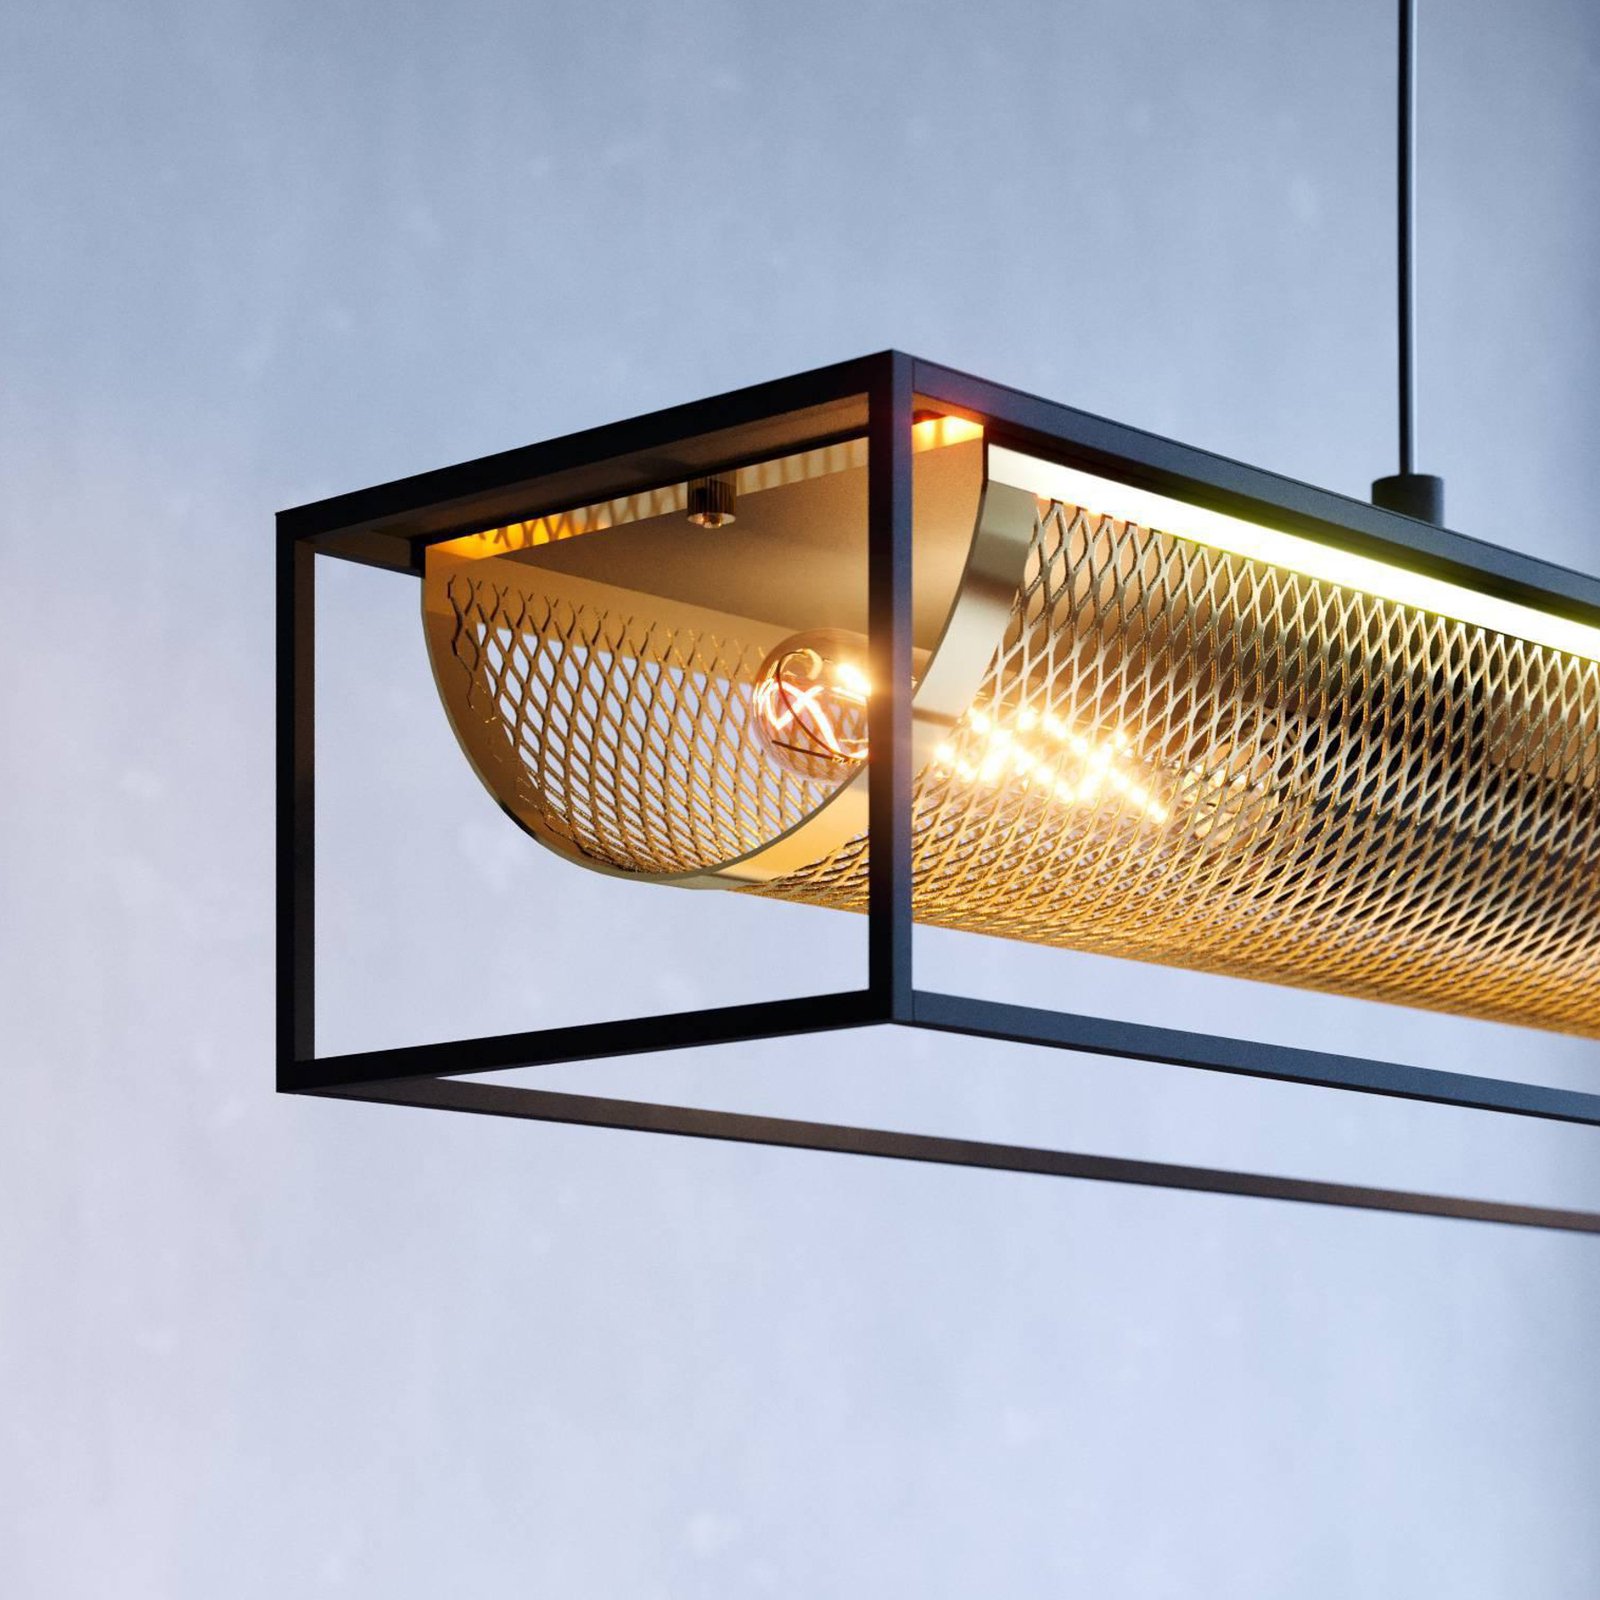 Nohales hanglamp, 112 cm, zwart/messingkleurig, 4-lamps.